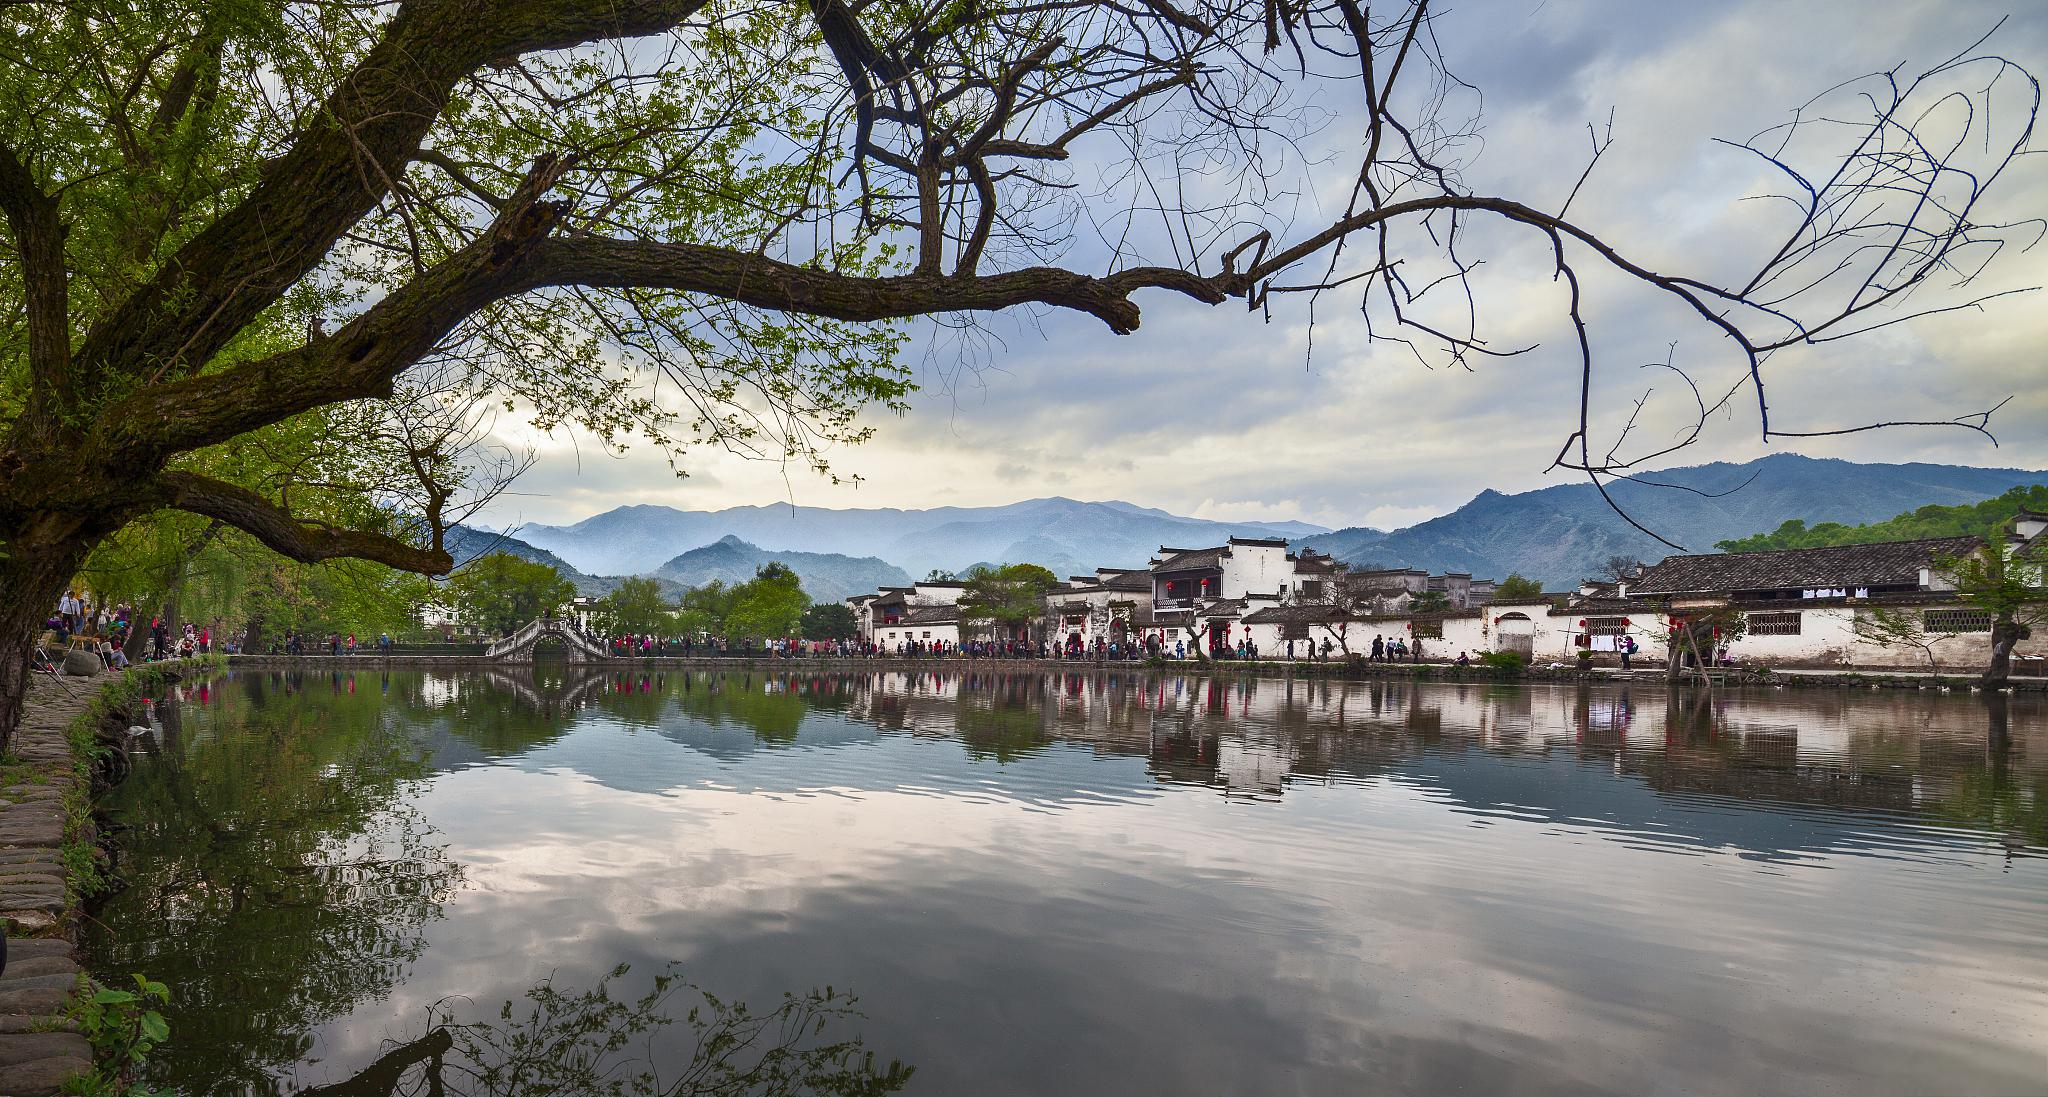 那就来参加我们的新安江山水画廊与徽州古城一日游吧!